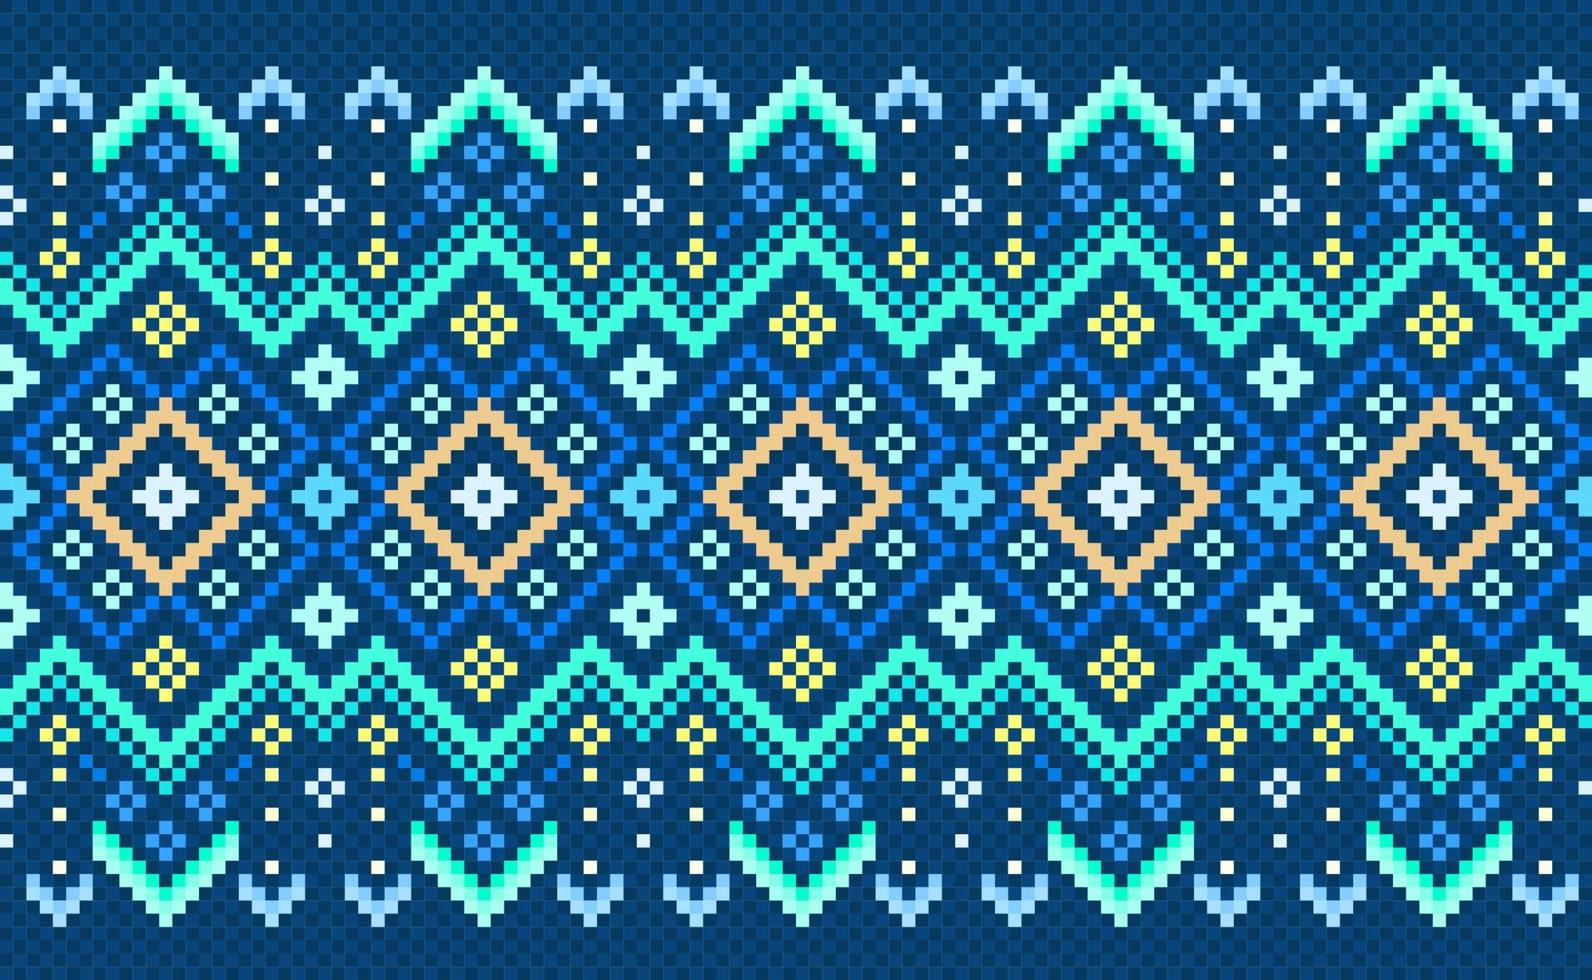 bordado padrão étnico, estilo de geometria decorativa de ponto cruz vetorial, fundo padrão azul e verde vetor